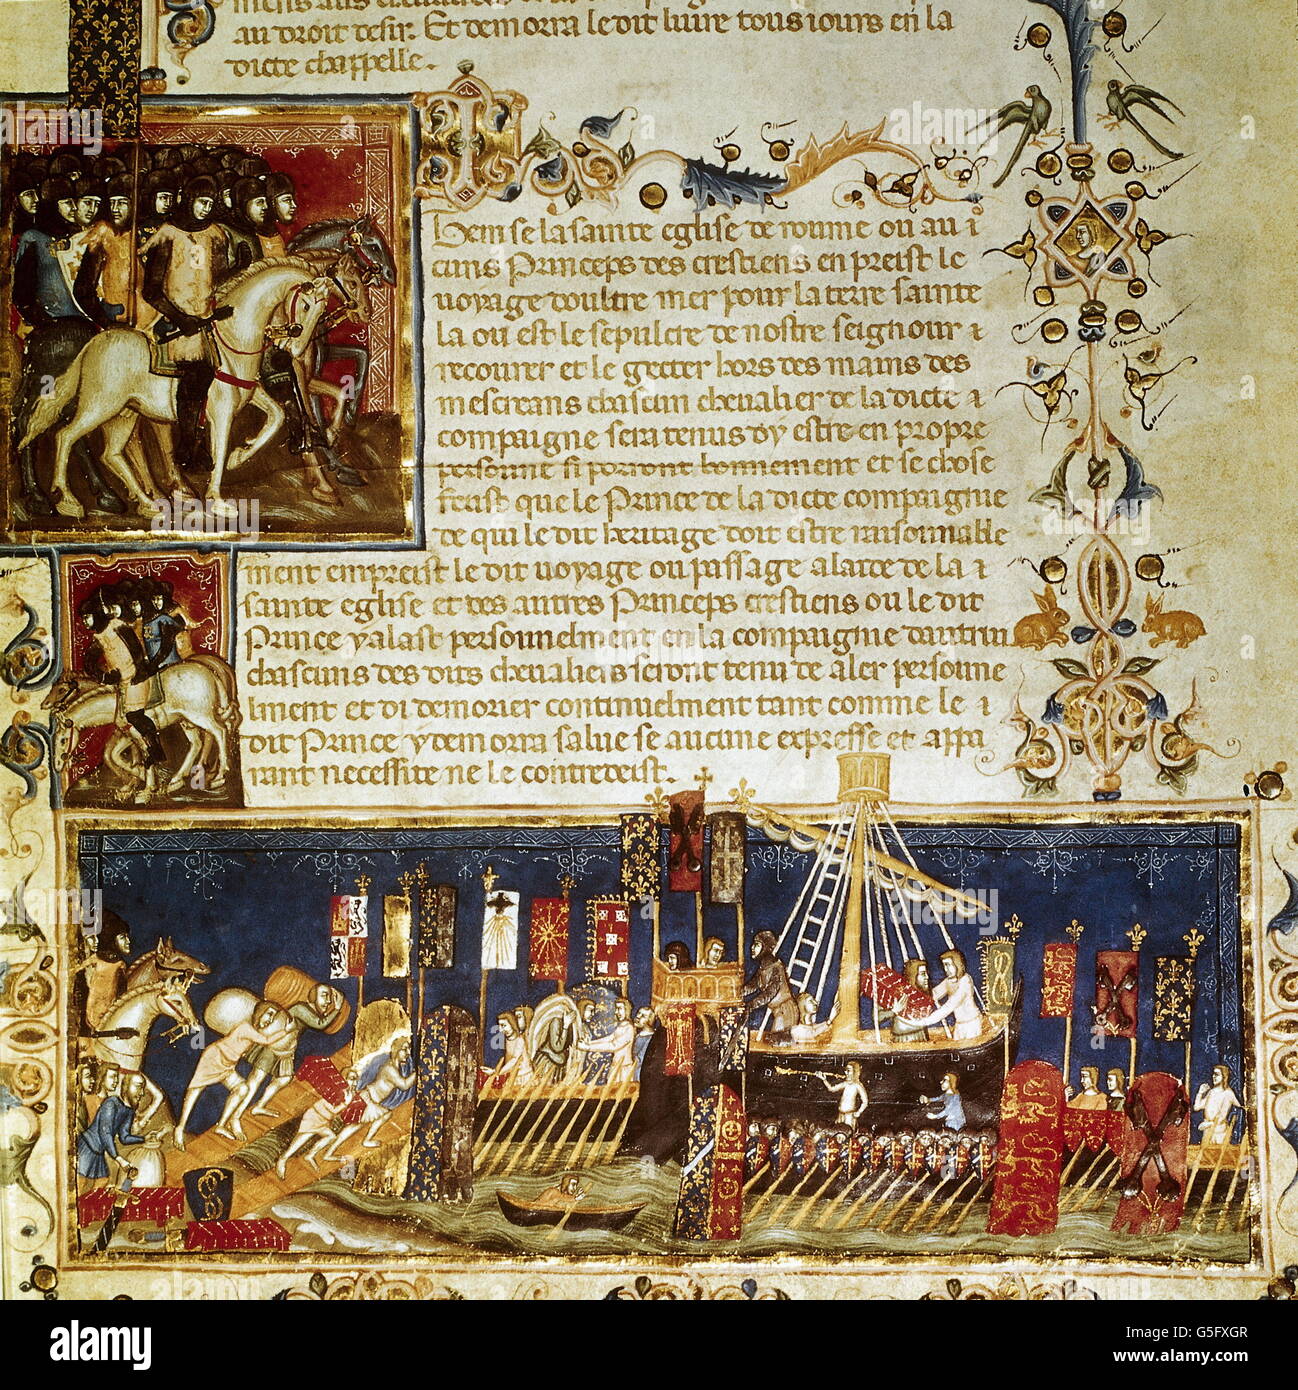 Medioevo, crociate, crociati imbarco, miniatura dal manoscritto francese, Parigi, biblioteca nazionale, (Ms.fr.4274, diritti aggiuntivi-clearences-non disponibile Foto Stock